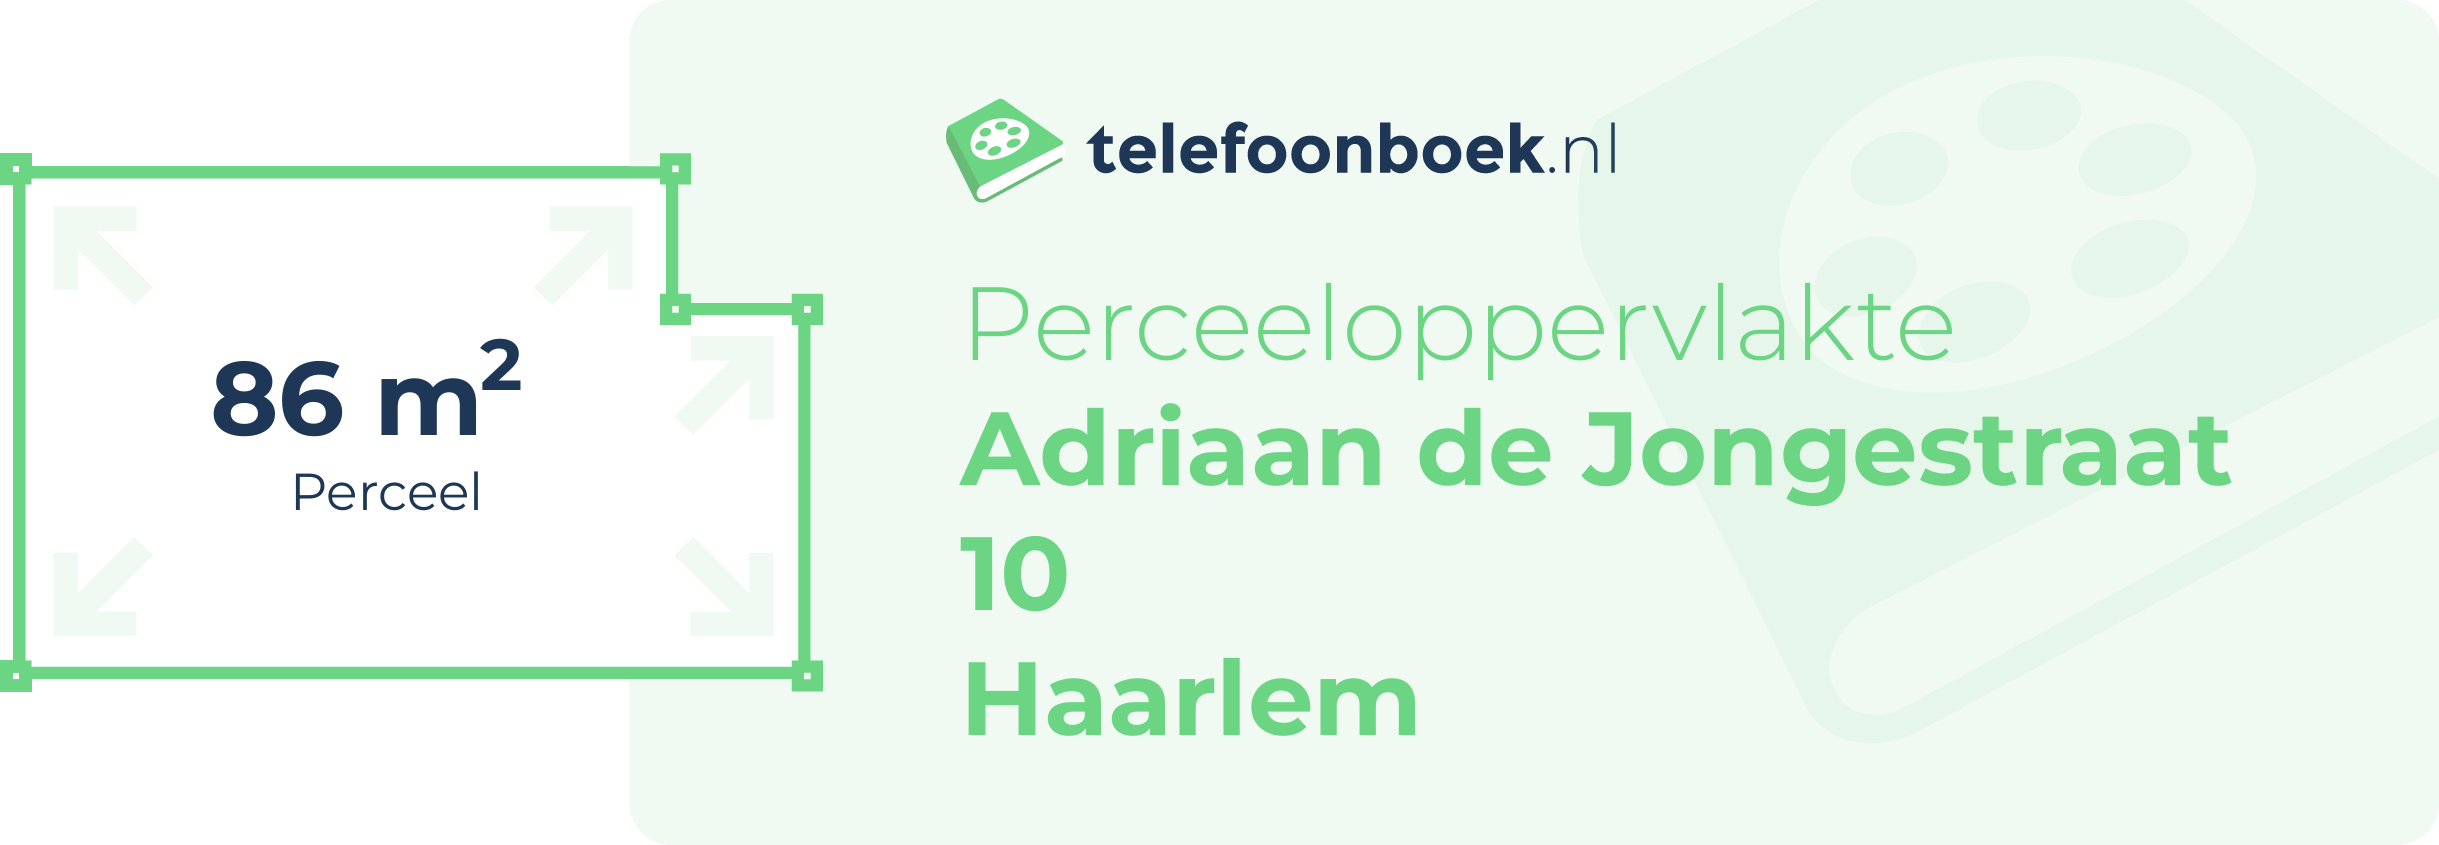 Perceeloppervlakte Adriaan De Jongestraat 10 Haarlem